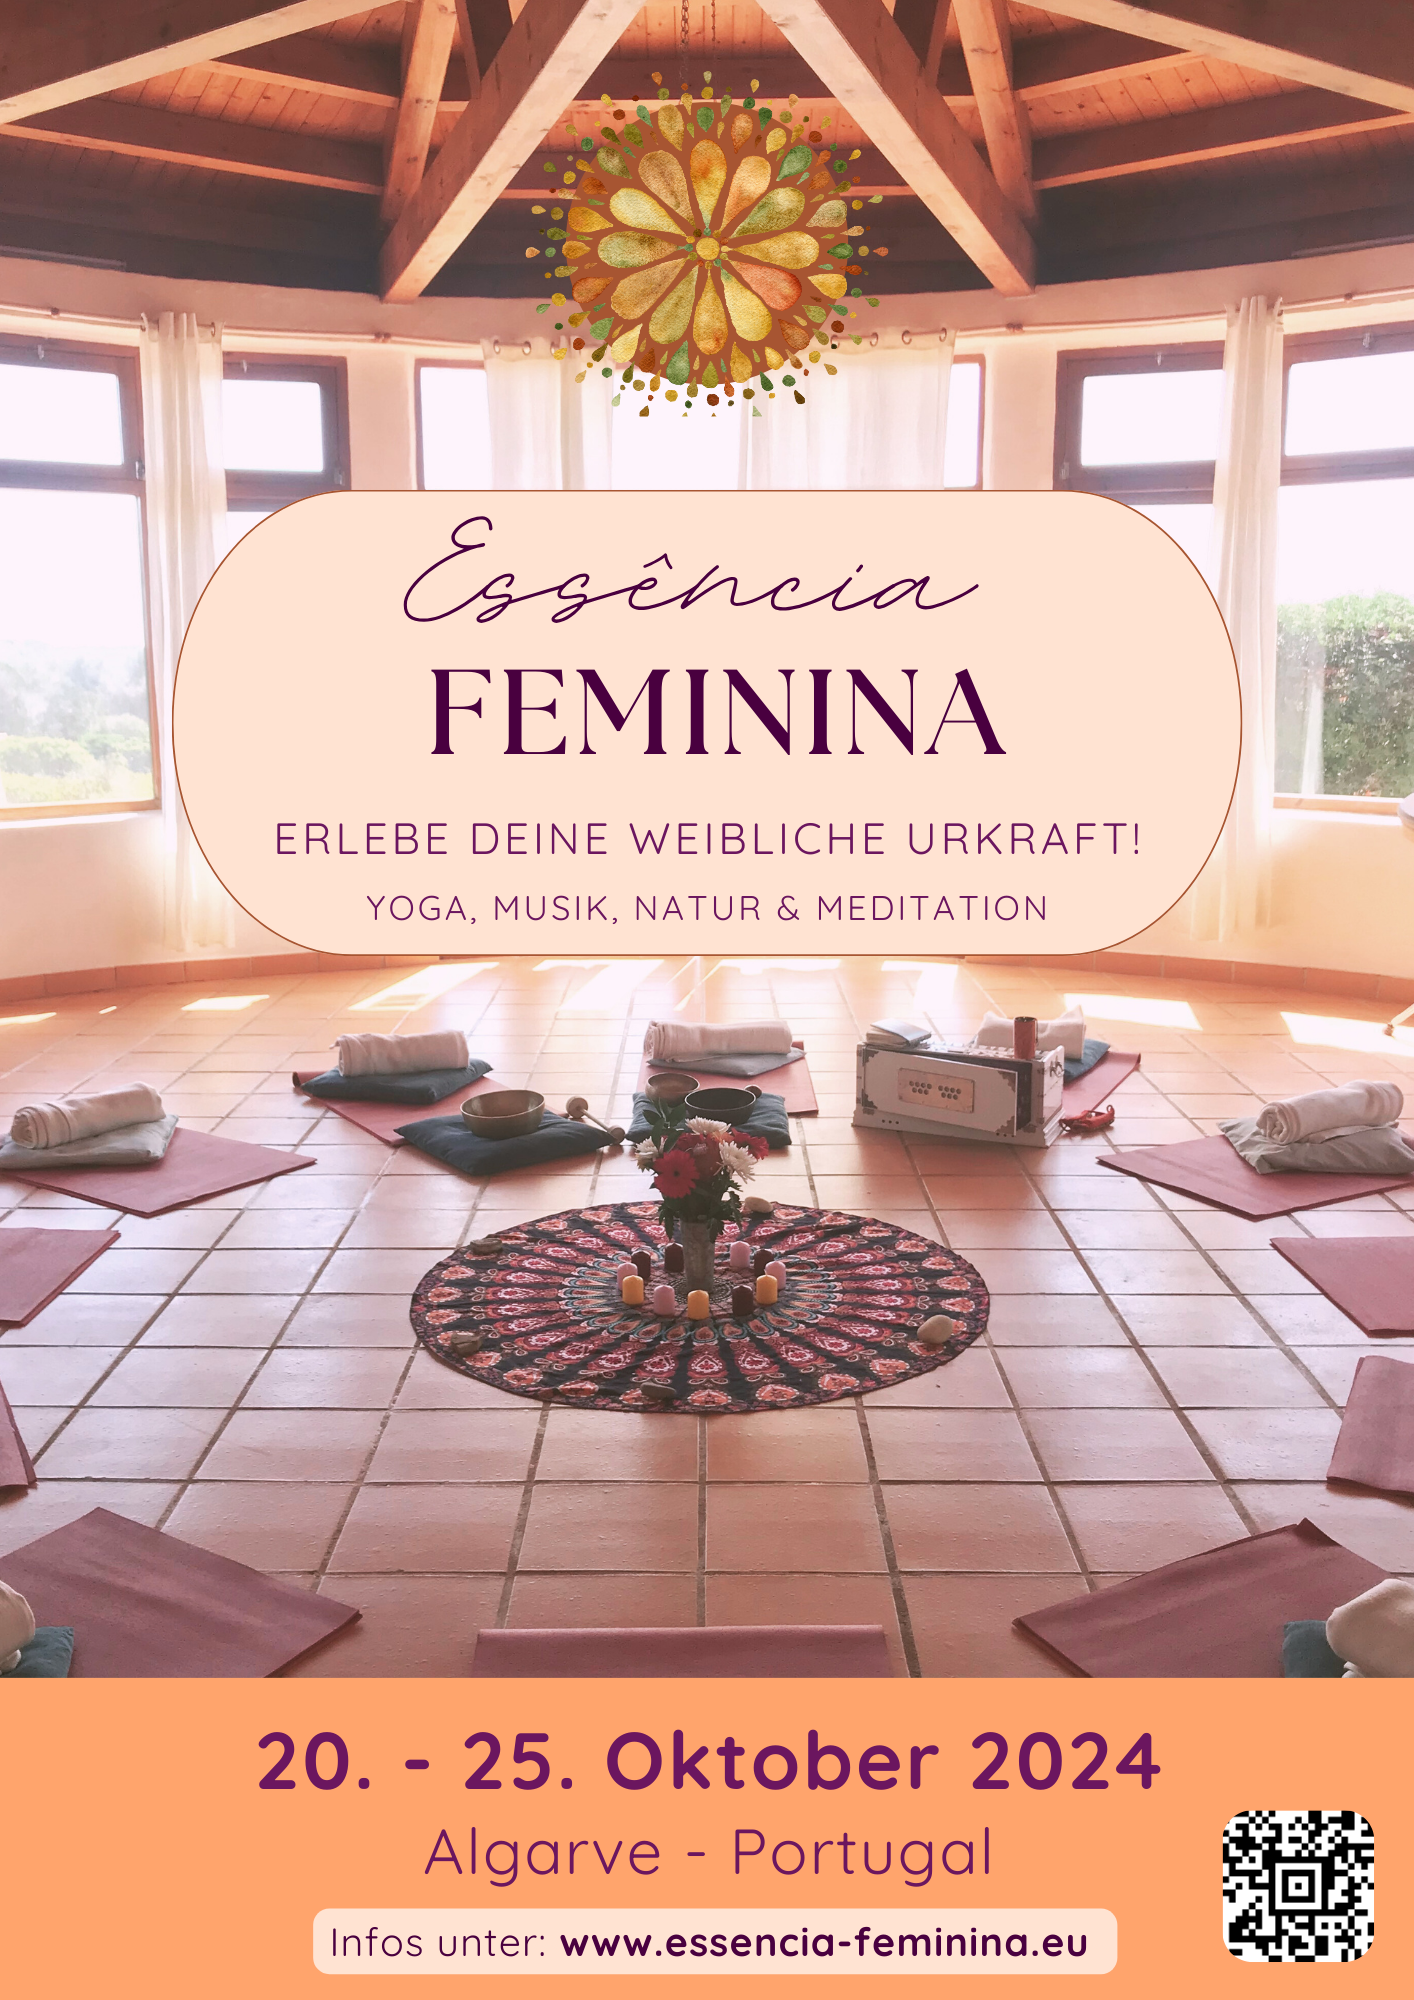 Essência Feminina Retreat - 20. - 25.10.24 in Portugal